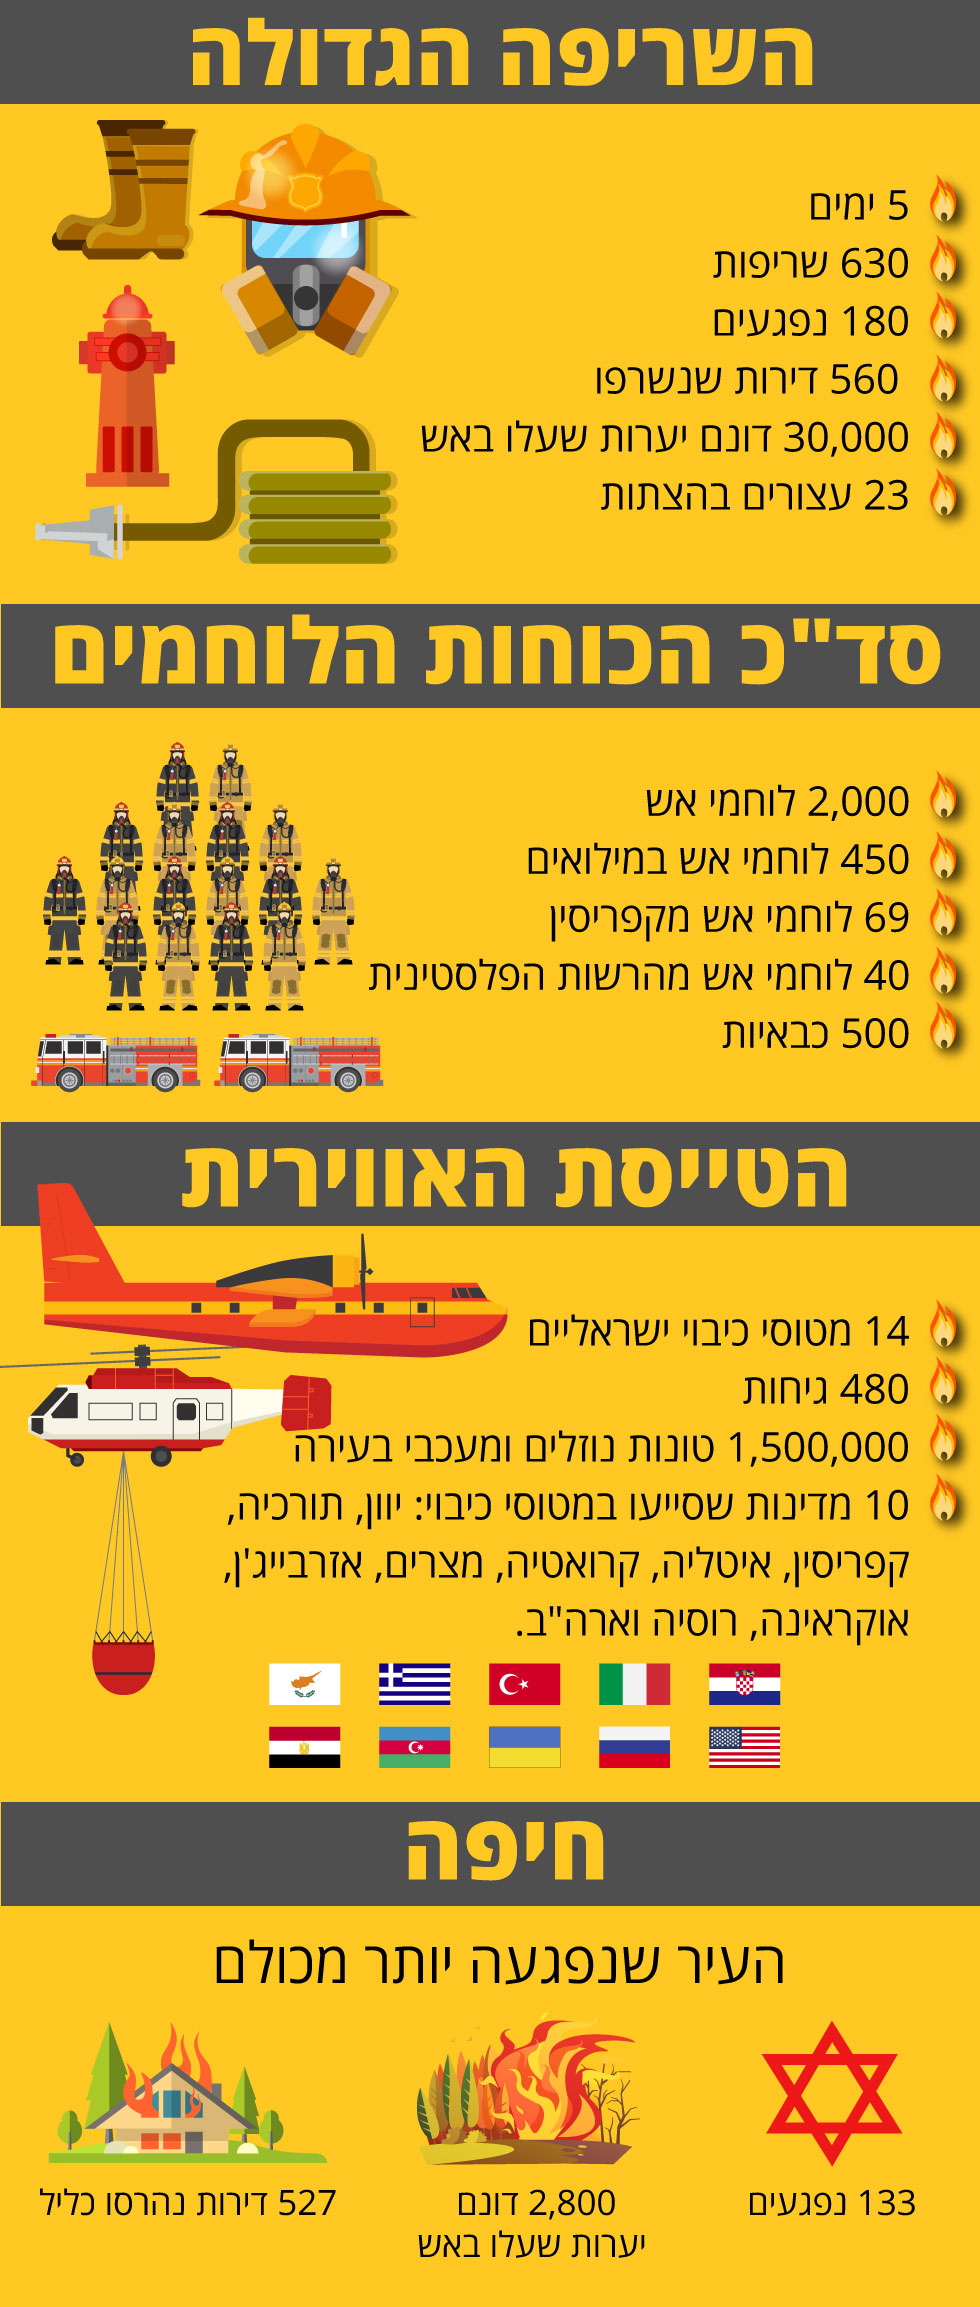 انفوجراف لفرق الانقاذ الدولية التى ساهمت فى انقاذ إسرائيل